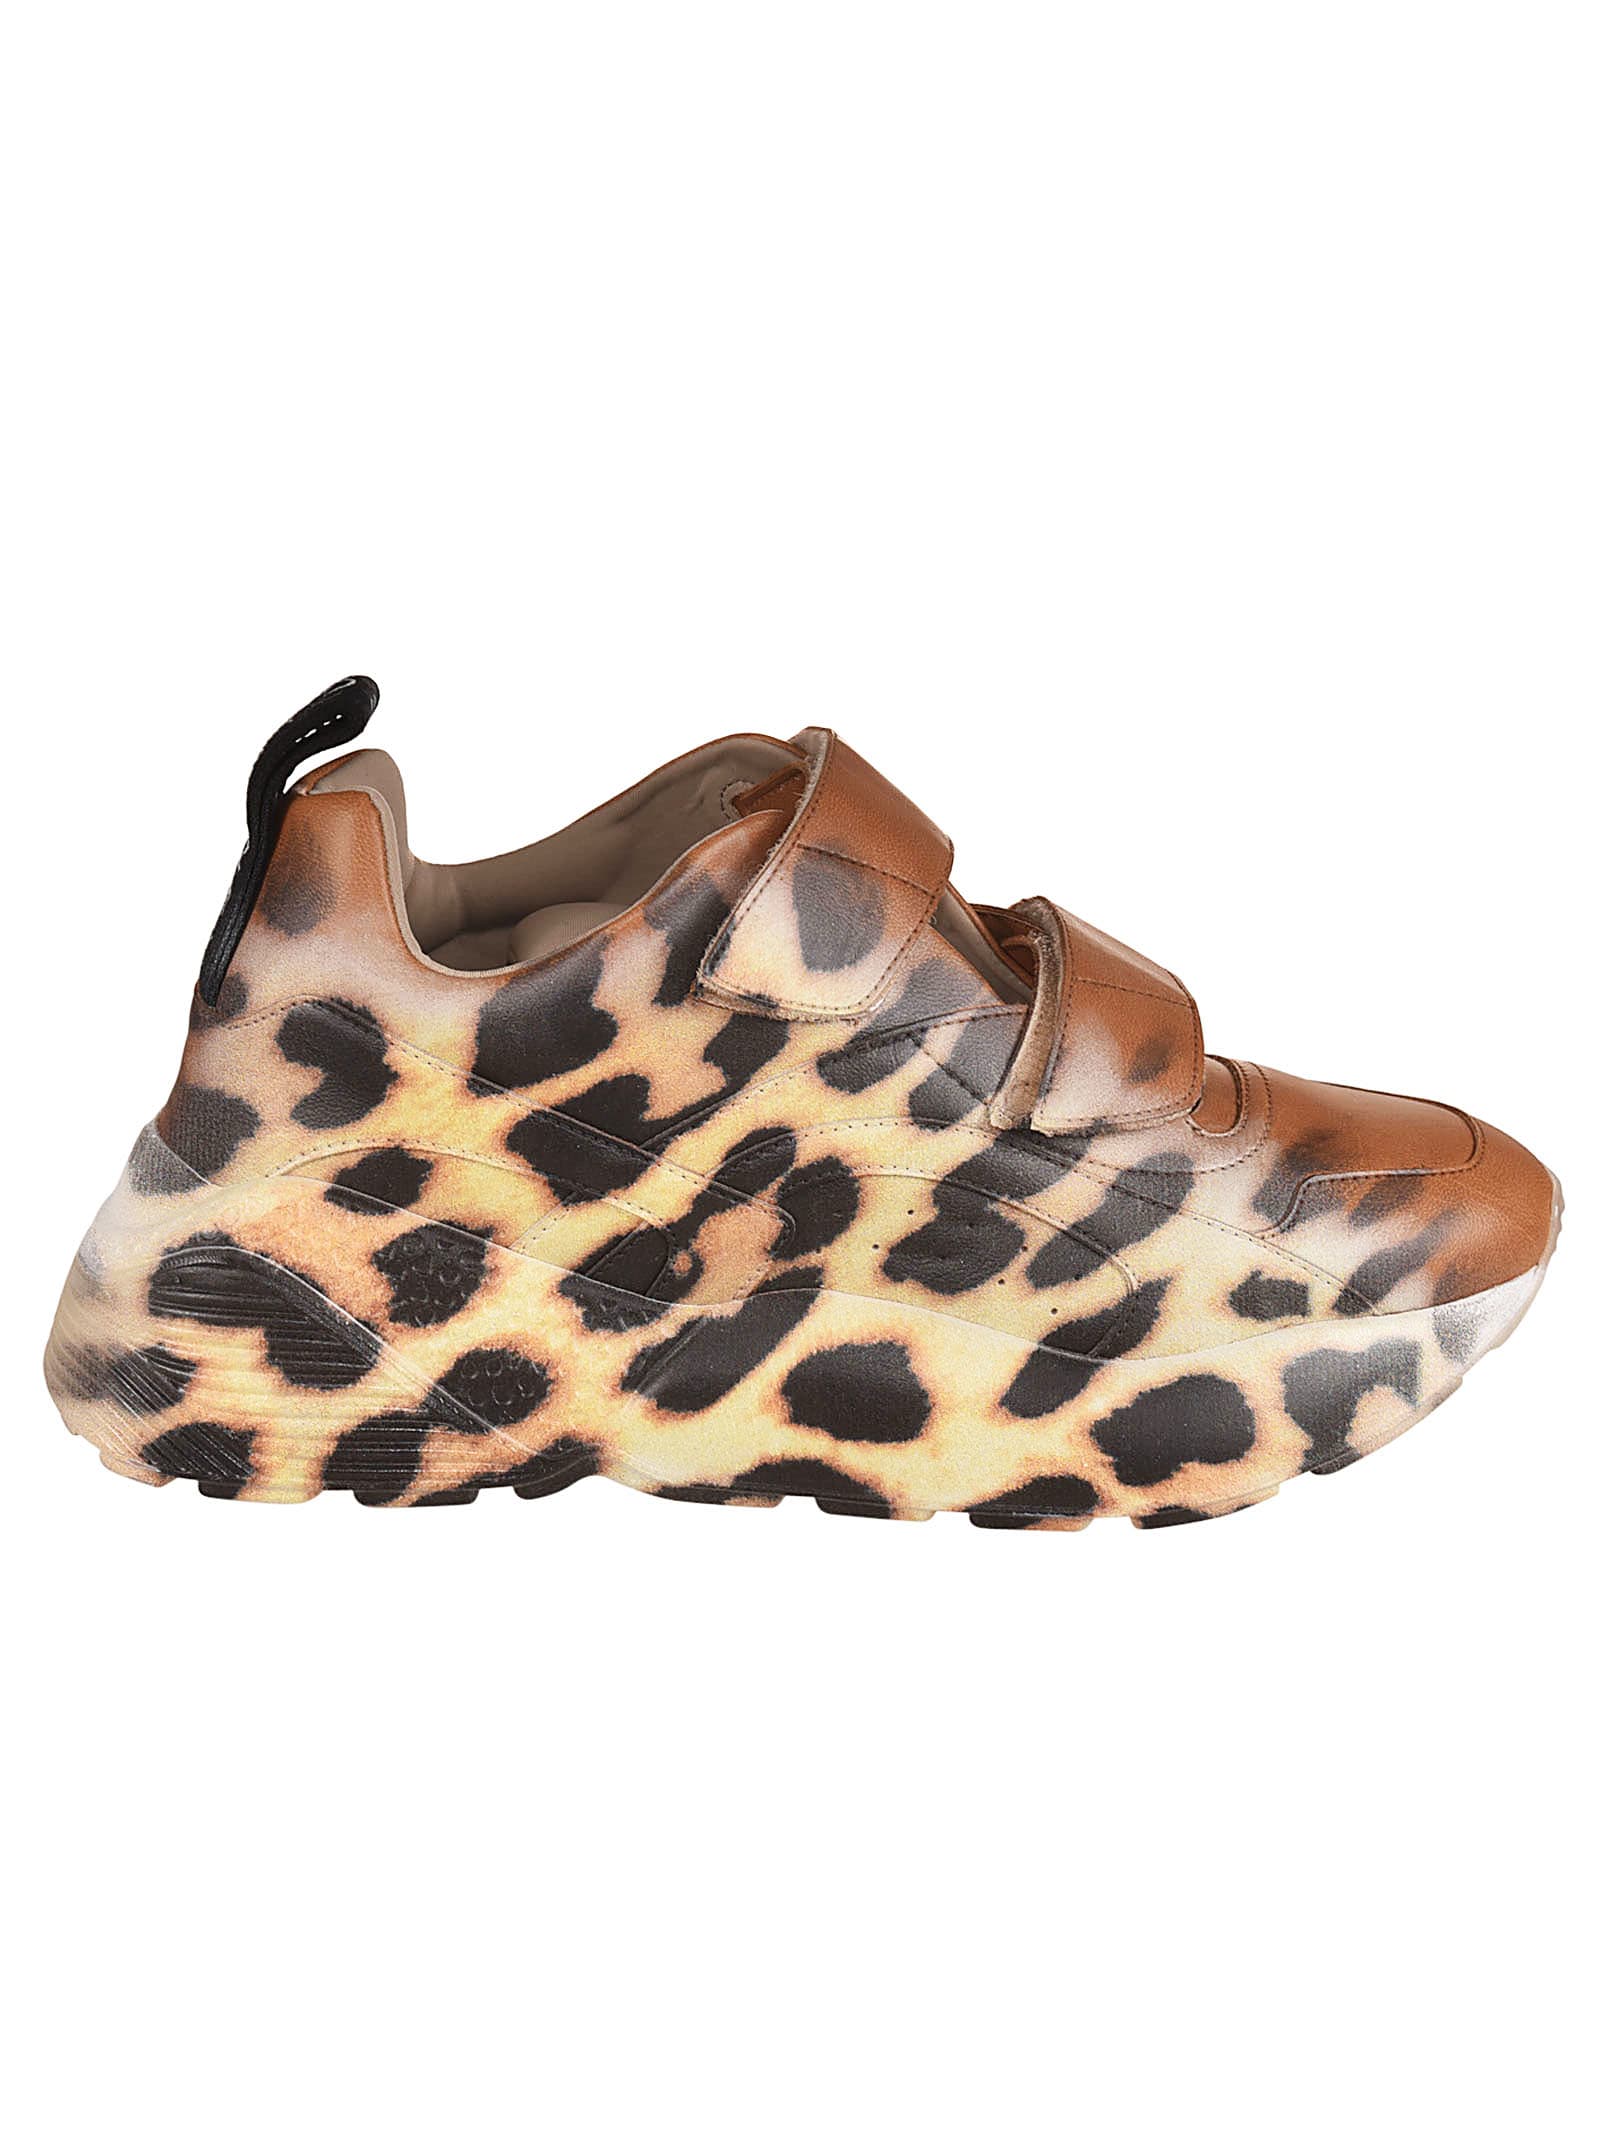 Stella McCartney Leopard Sneakers 